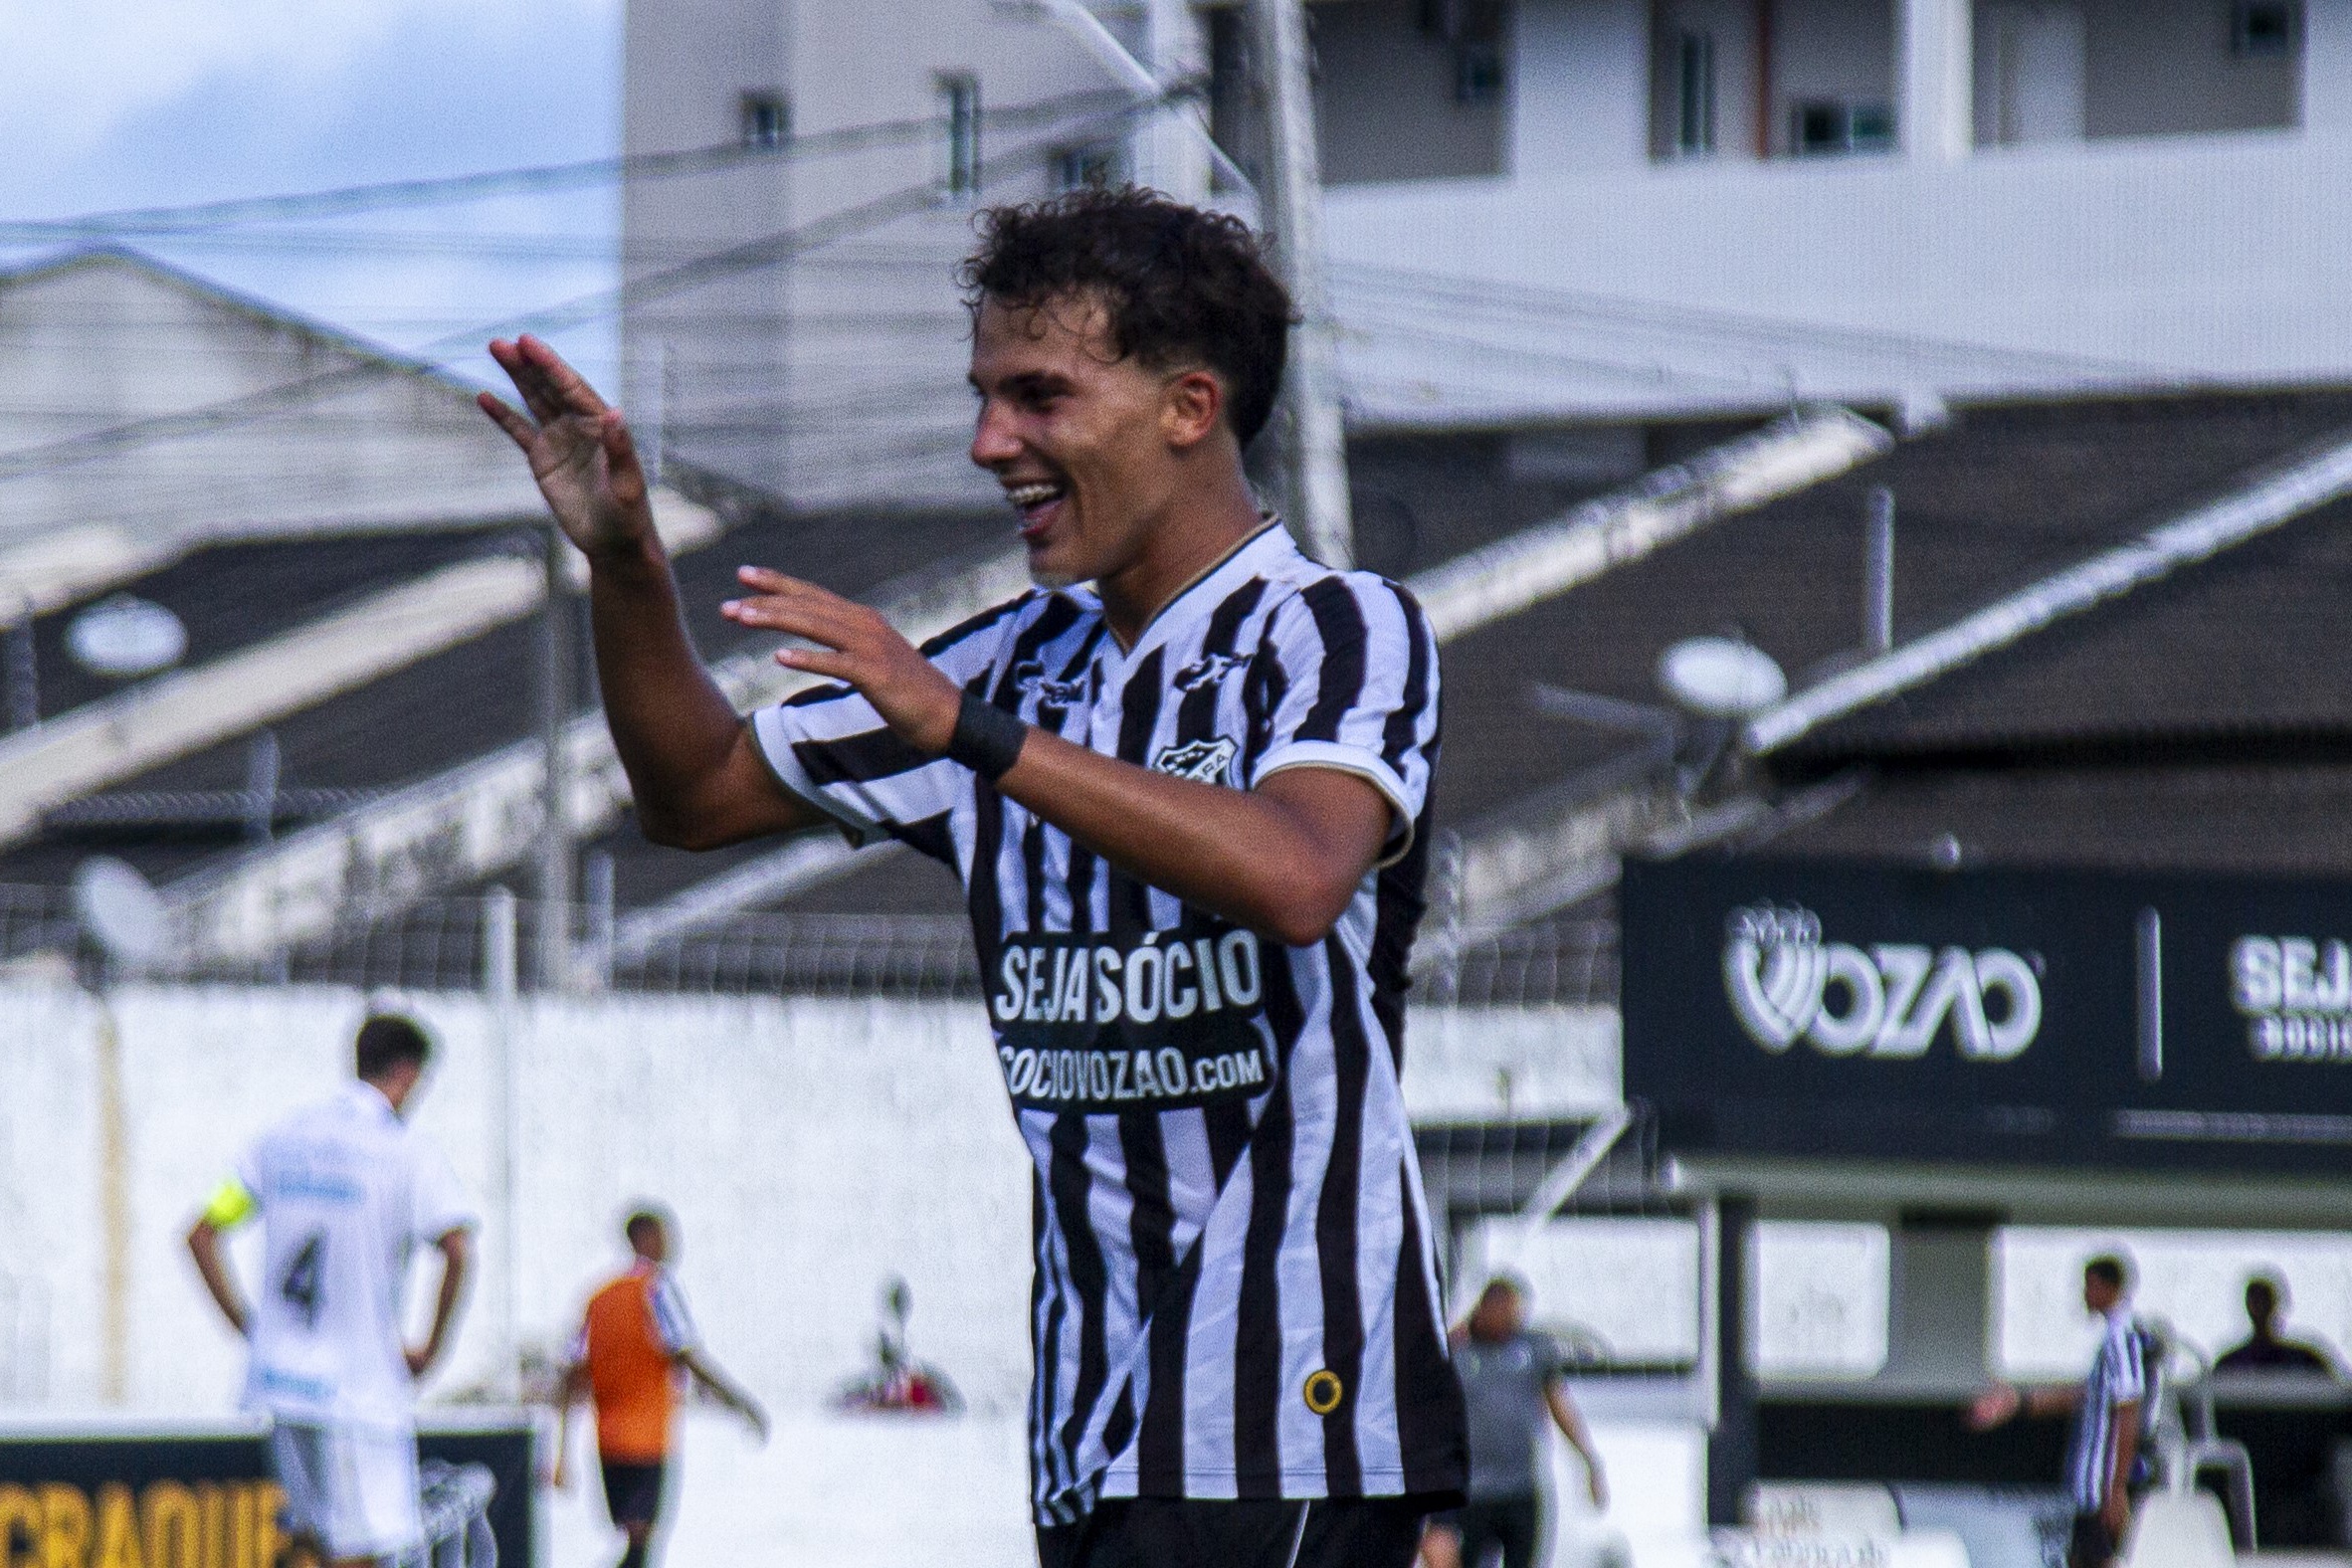 Sub-17: Autor de dois gols, Bortolluci comemora a estreia positiva diante do Grêmio/RS no Brasileiro